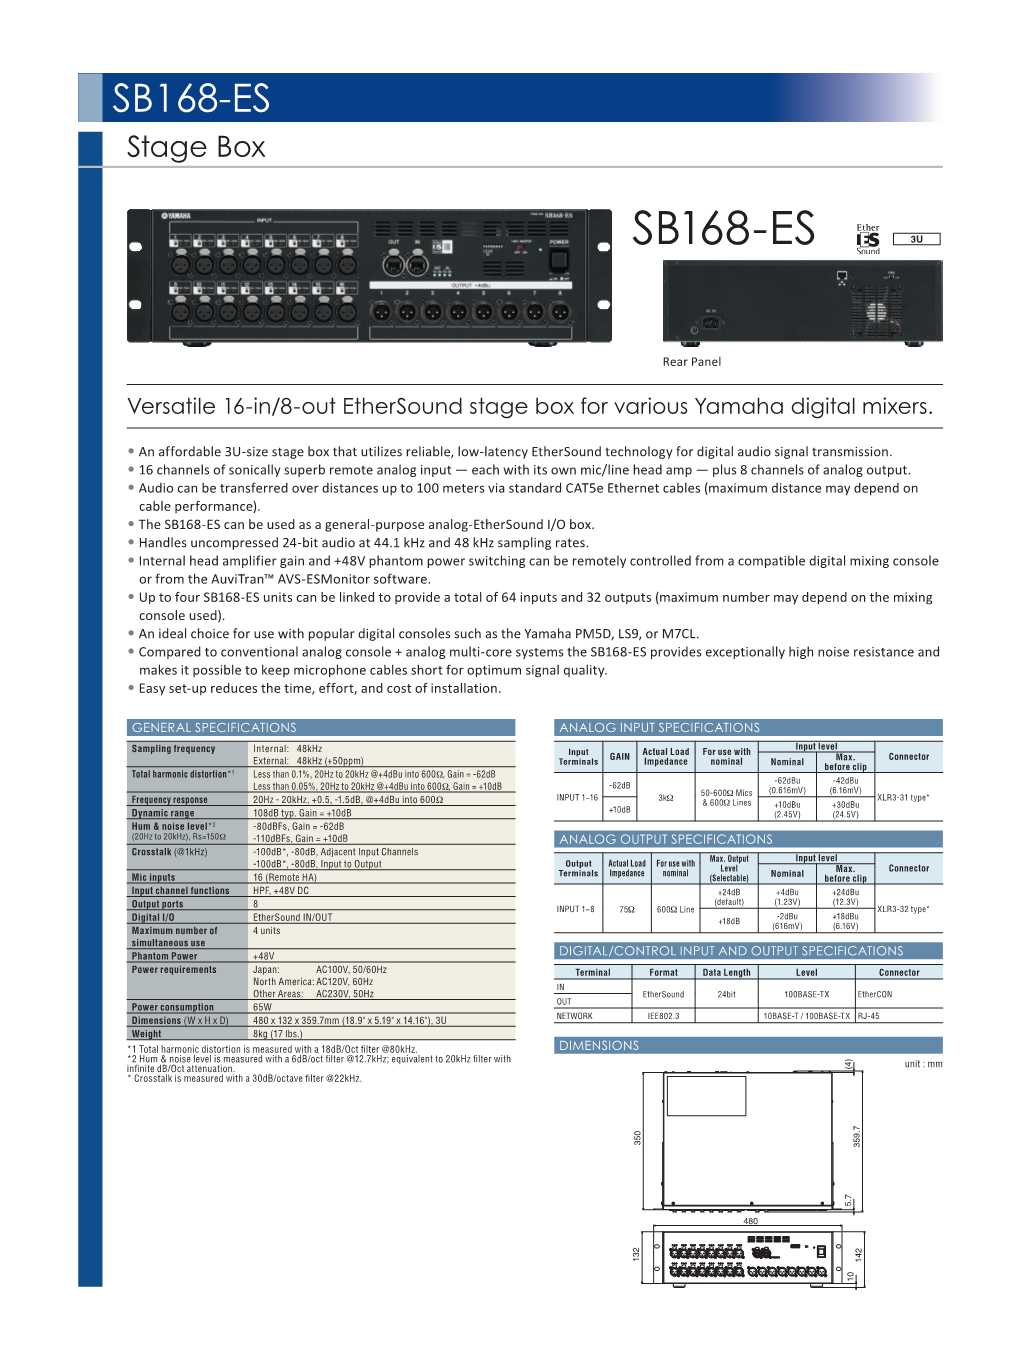 SB168-ES Stage Box SB168-ES